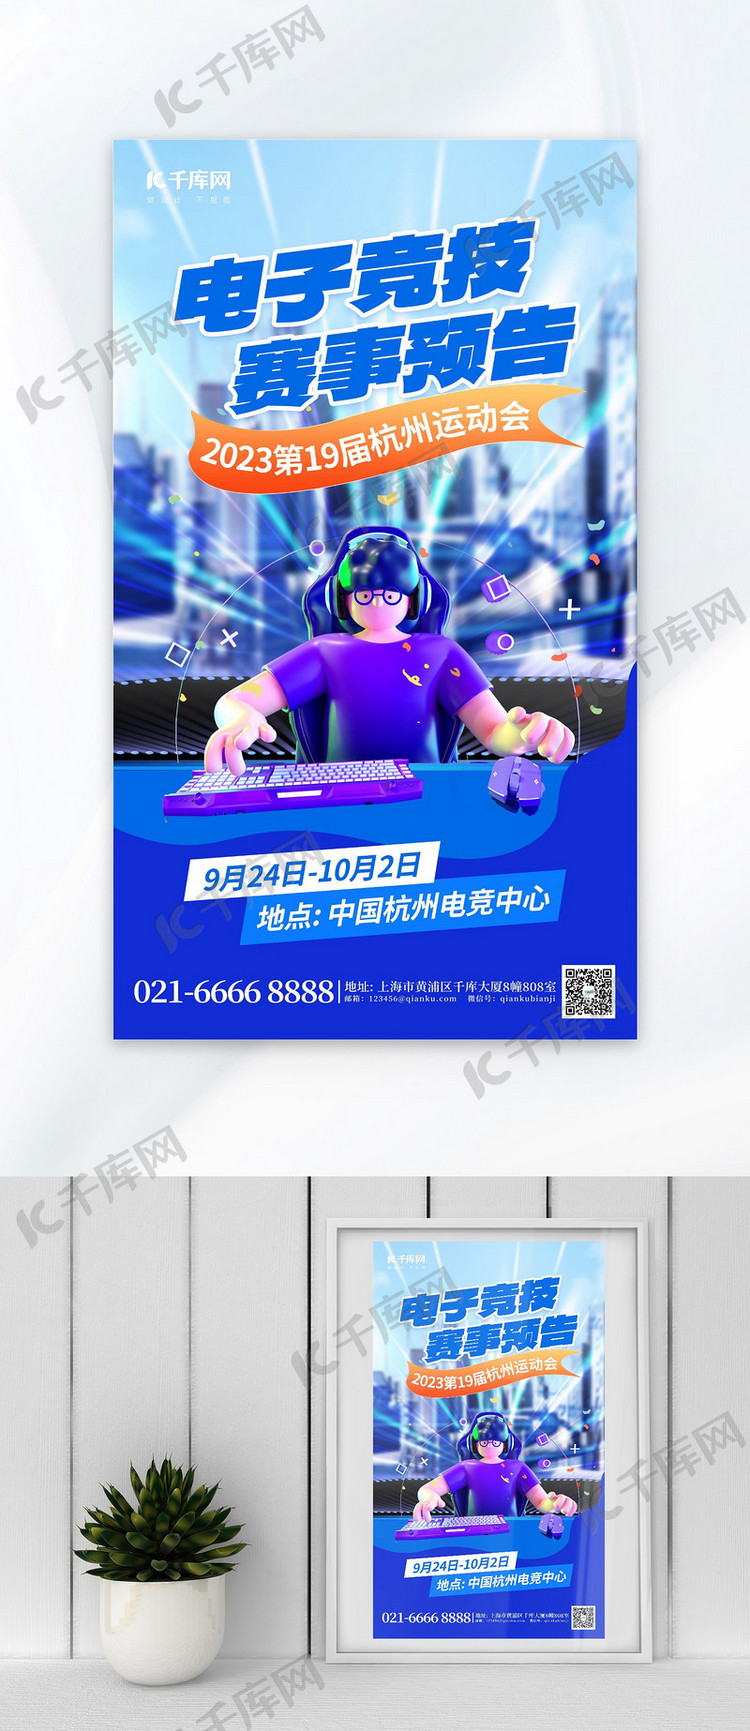 杭州运动会电子竞技赛事蓝色AIGC广告宣传海报